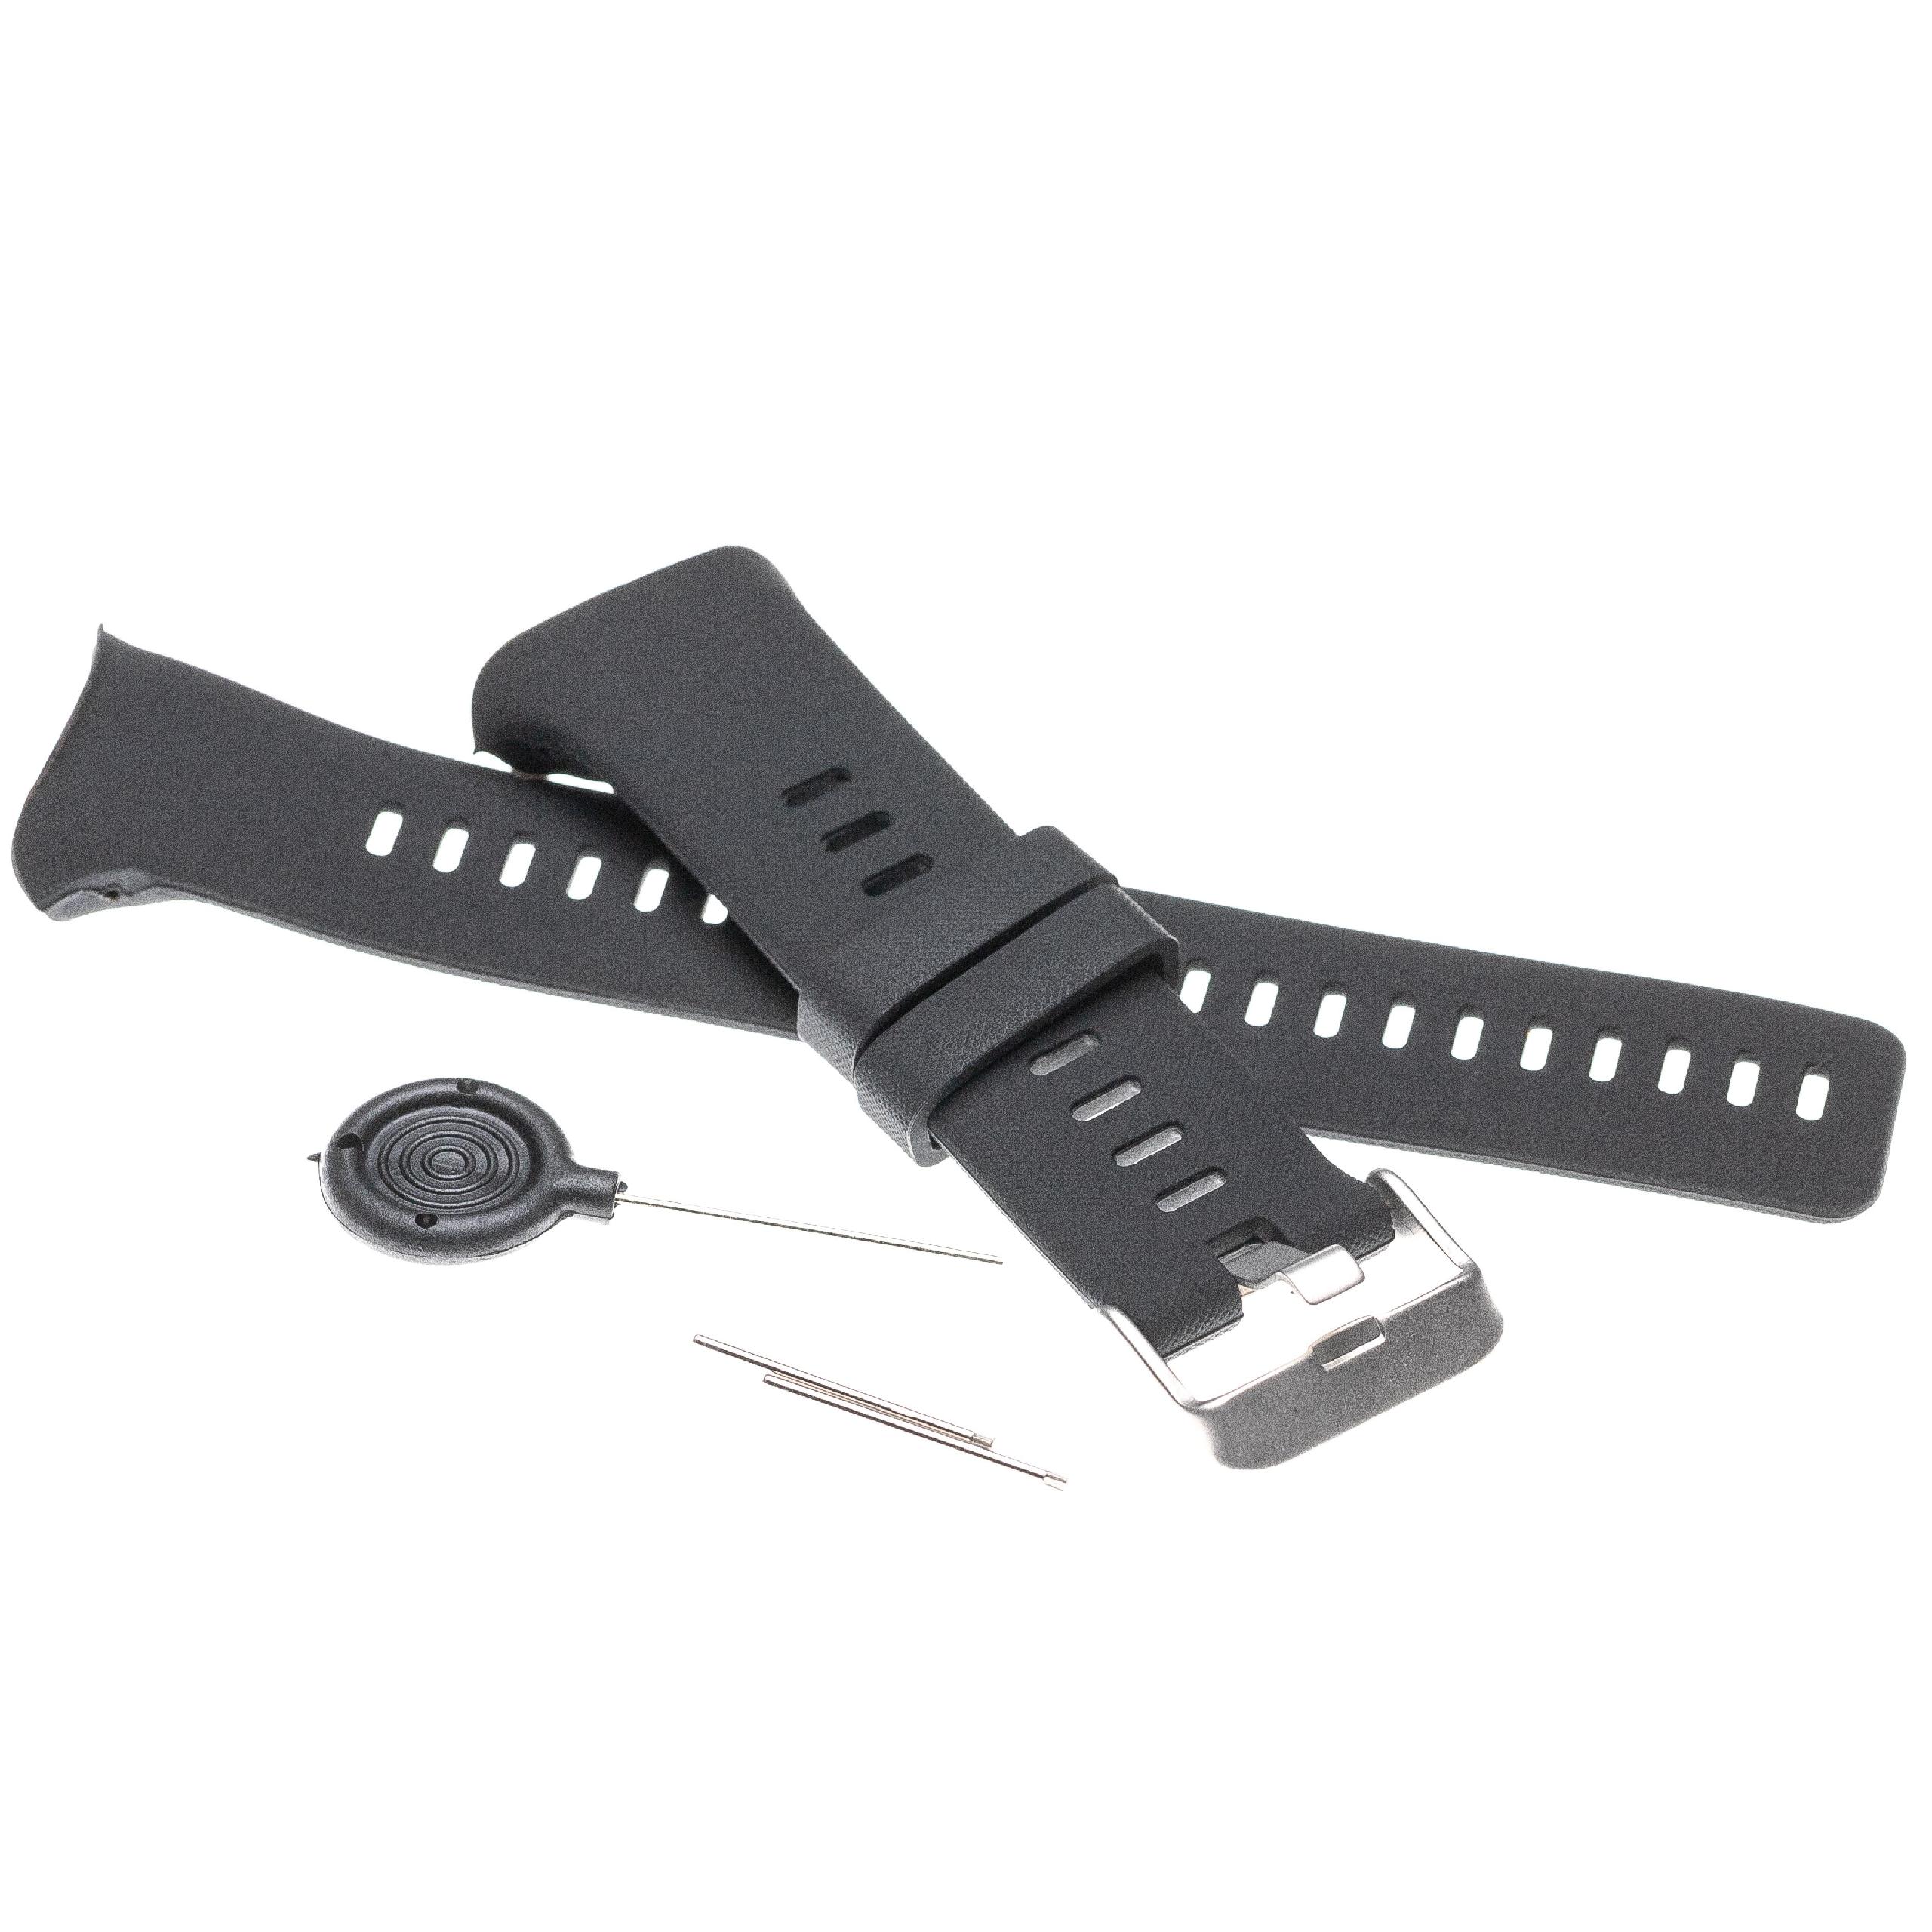 correa para Polar Vantage smartwatch - largo 12,6 + 8,7 cm, negro